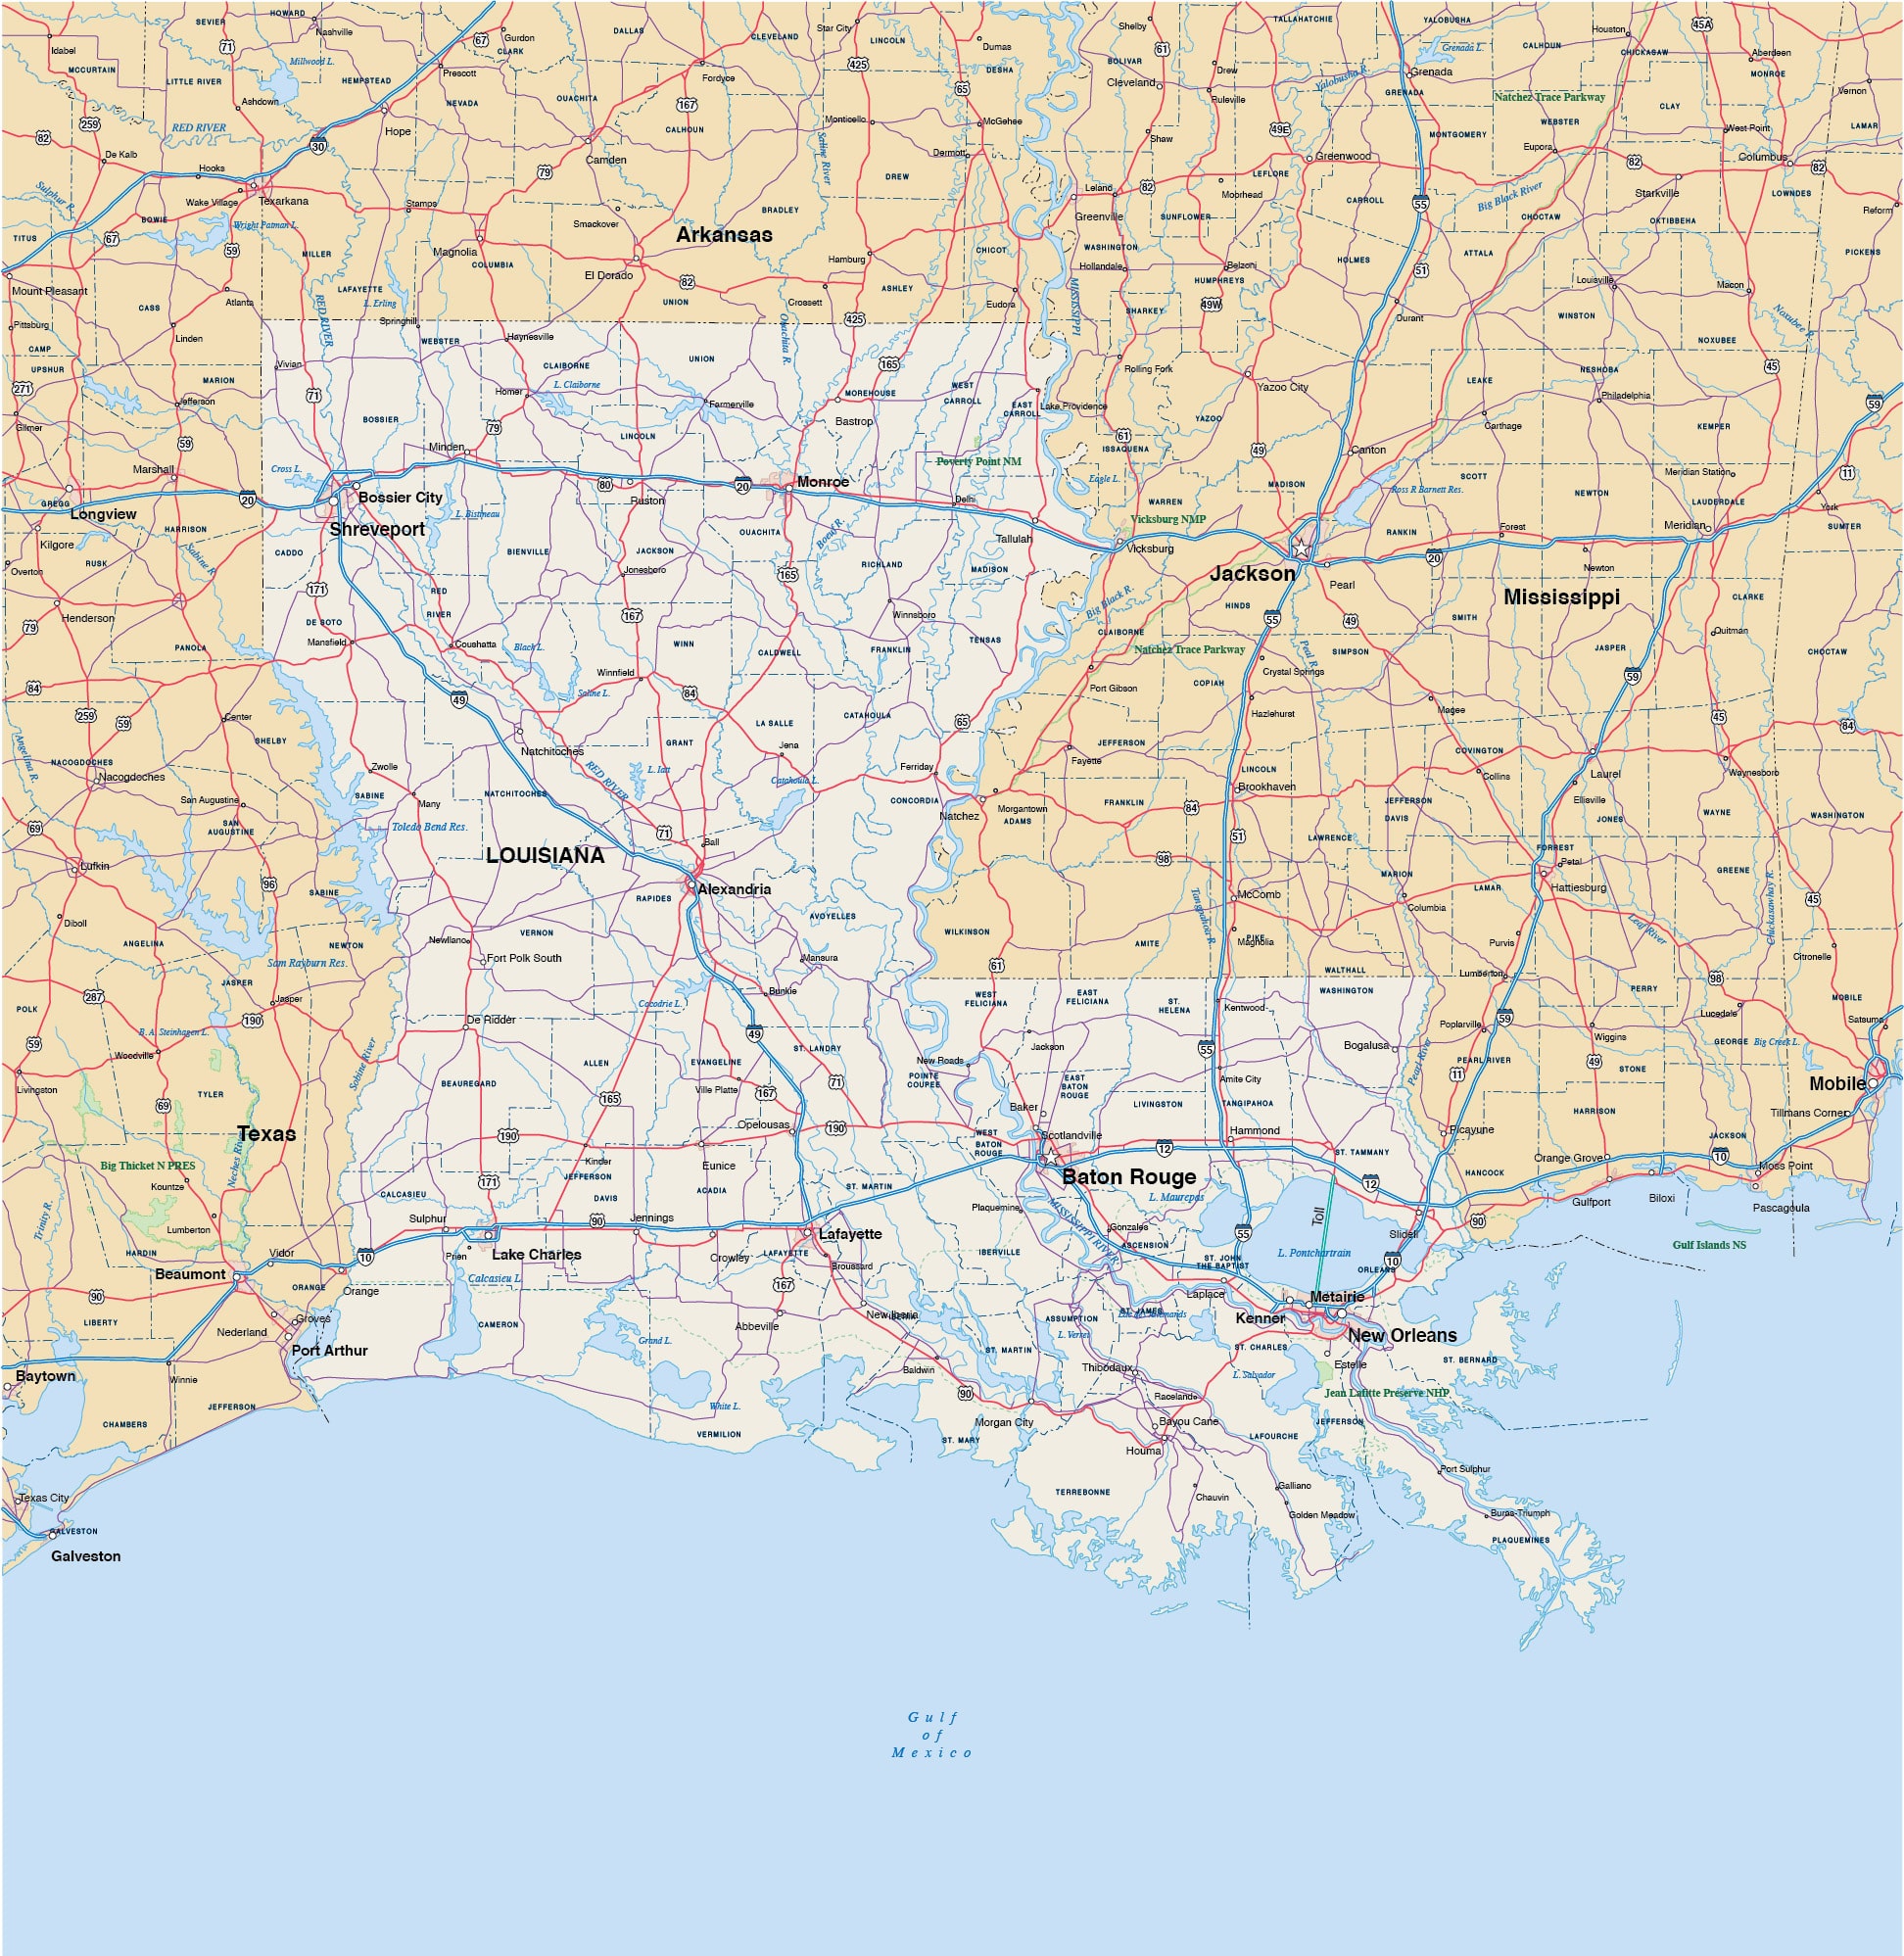 Maps of Louisiana